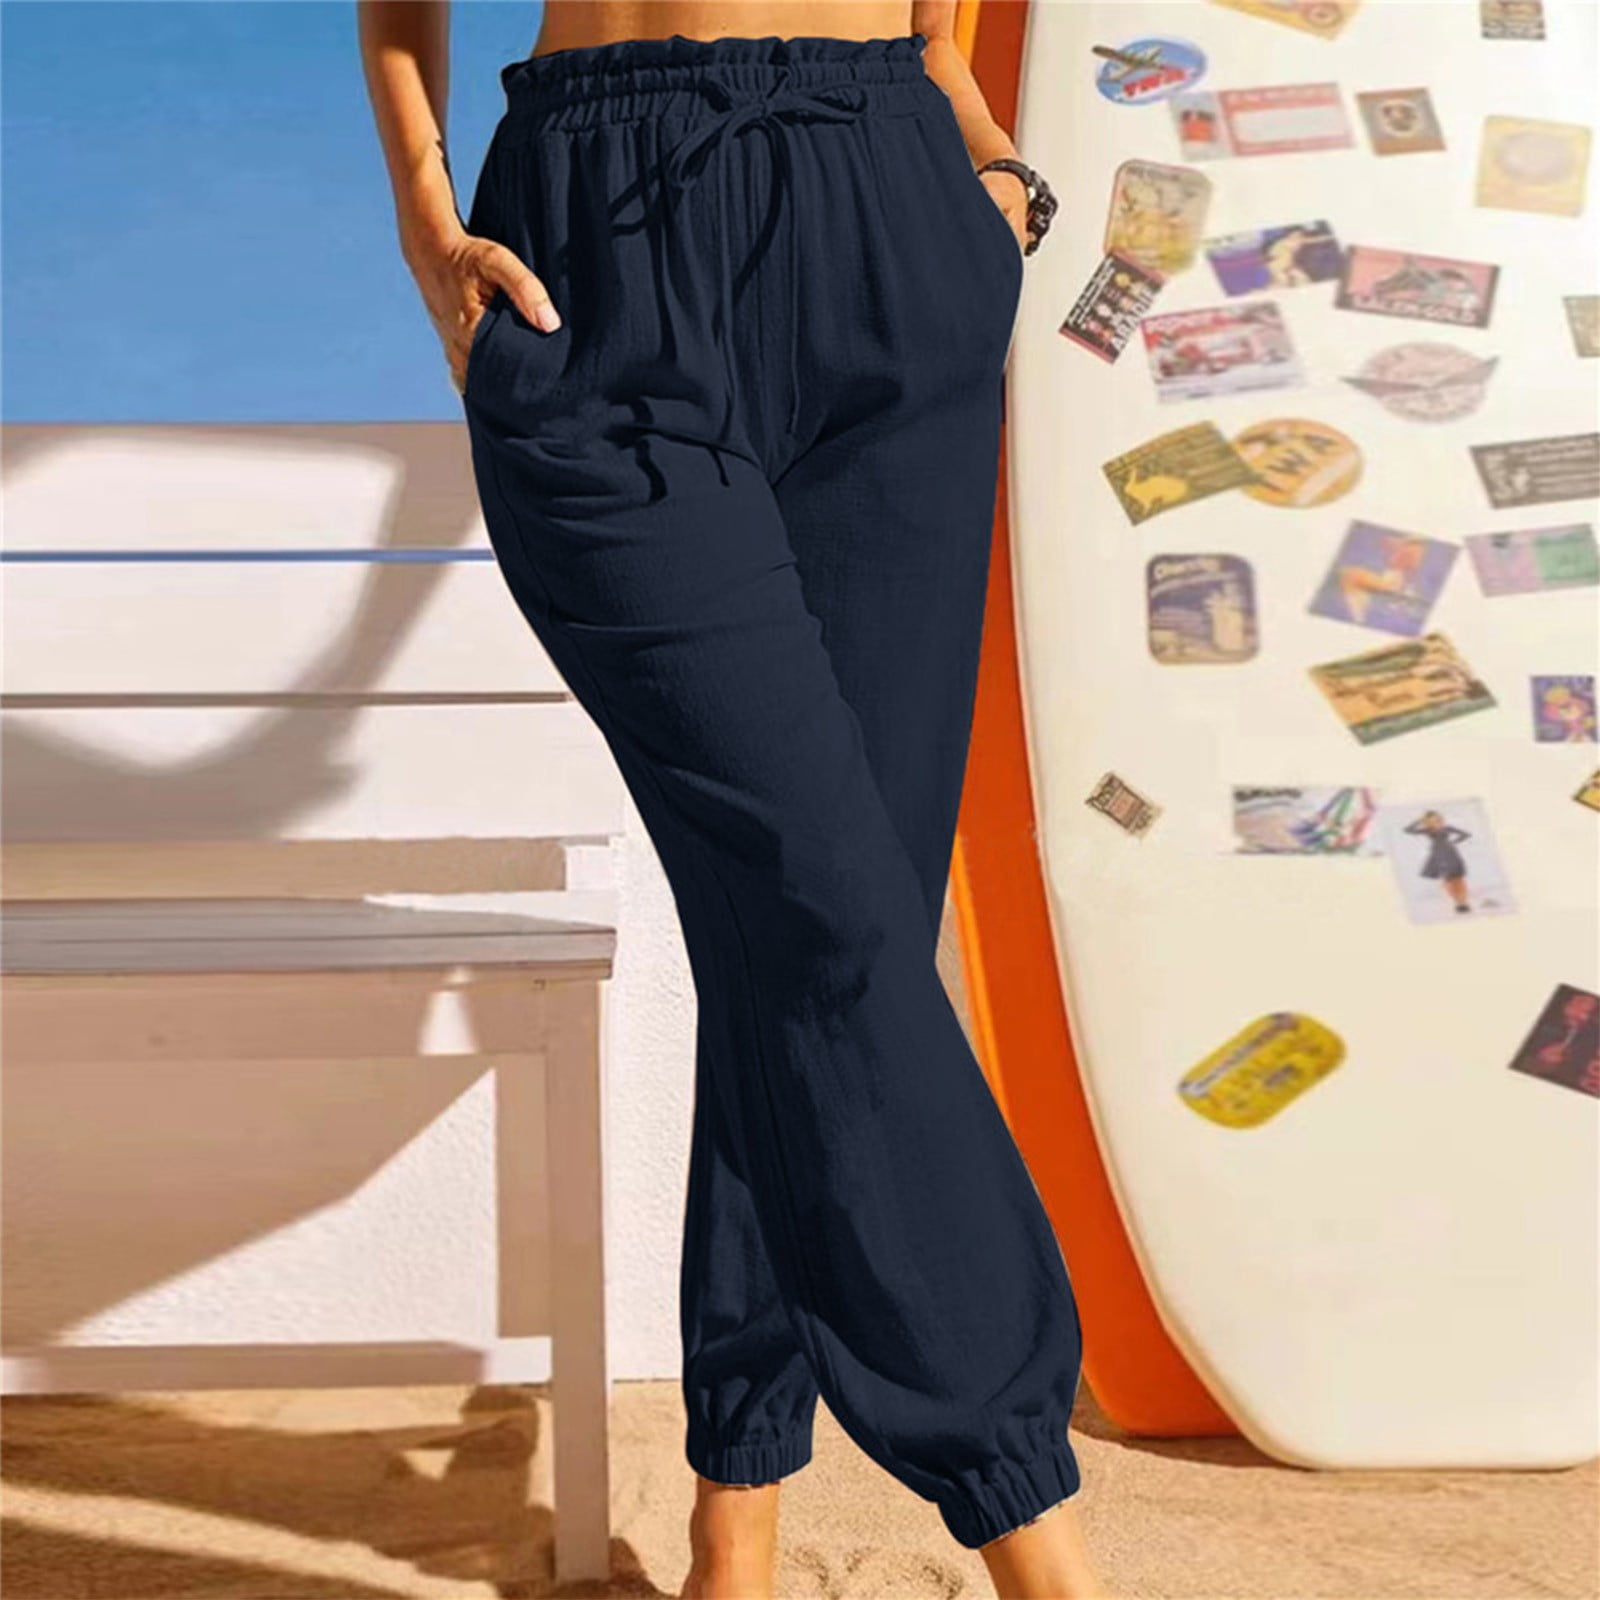 Summer Women's Pants Cotton Linen Large Size Casual Loose Ankle-length  Capri Pants Drawstring Harem Pants Women… | Fashion pants, Pants for women,  Harem pants women